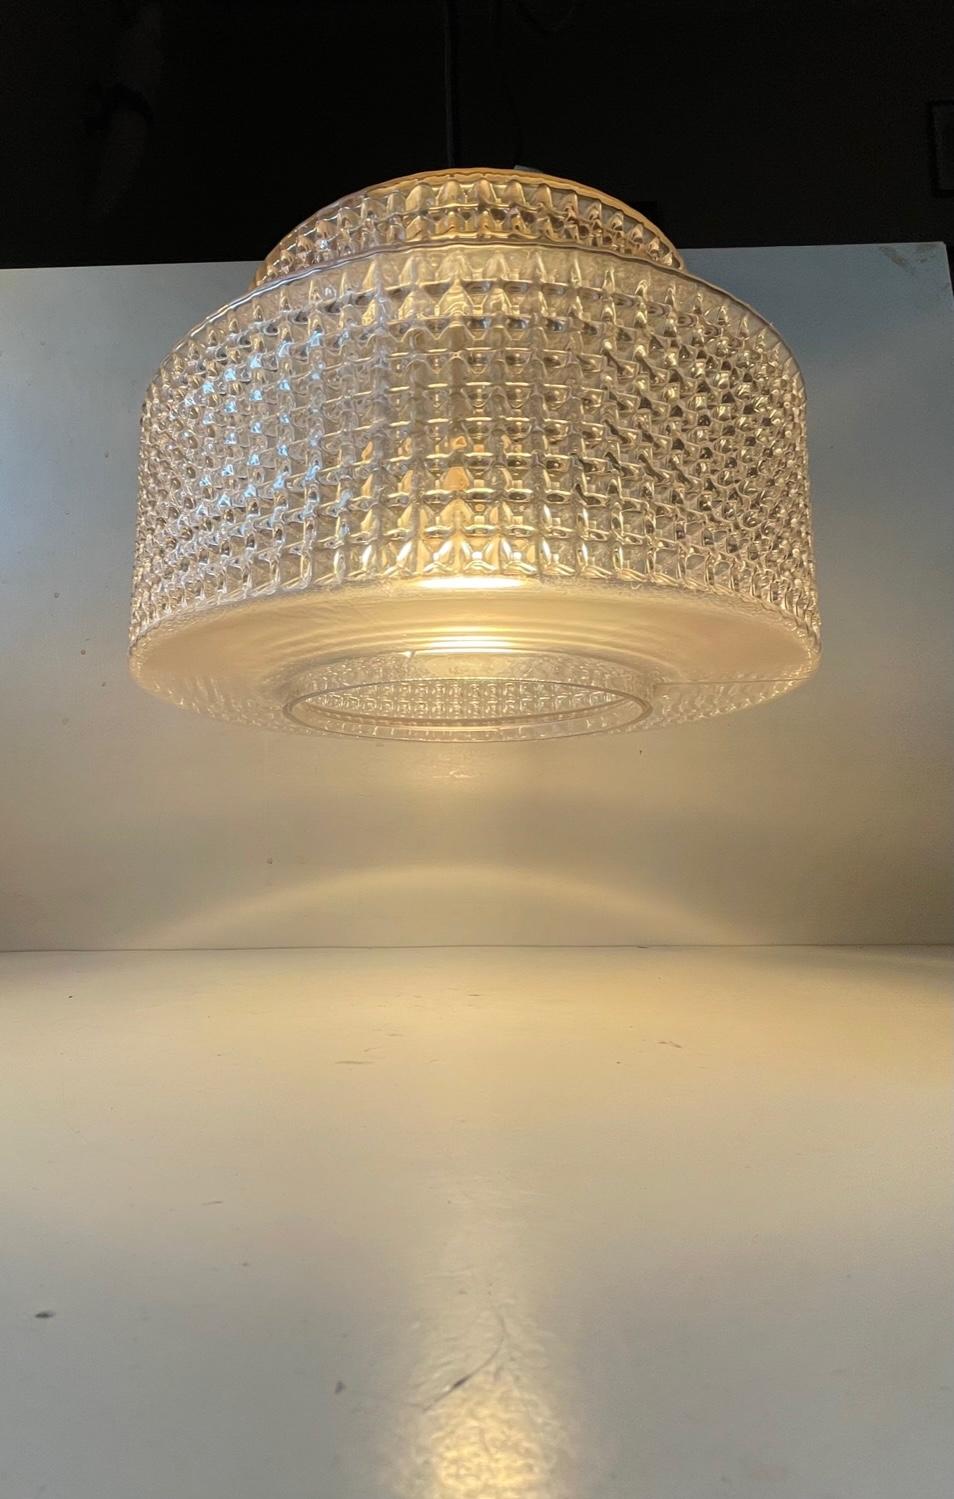 Scandinavian Modern Pendant Ceiling Light in Diamond Pattern Glass, Vitrika 60s For Sale 1